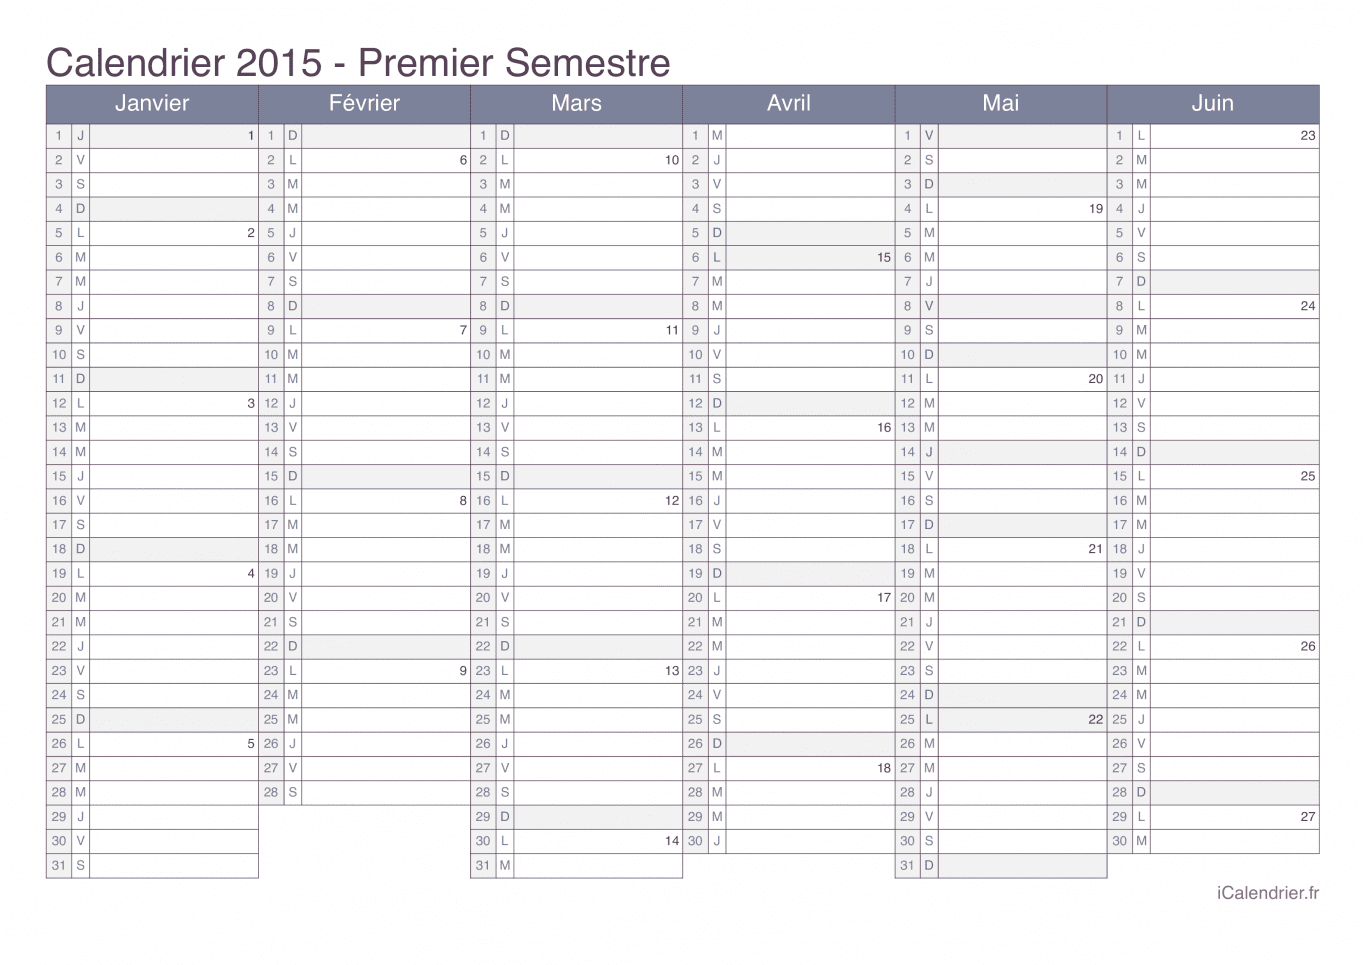 Calendrier par semestre avec numéros des semaines 2015 - Office